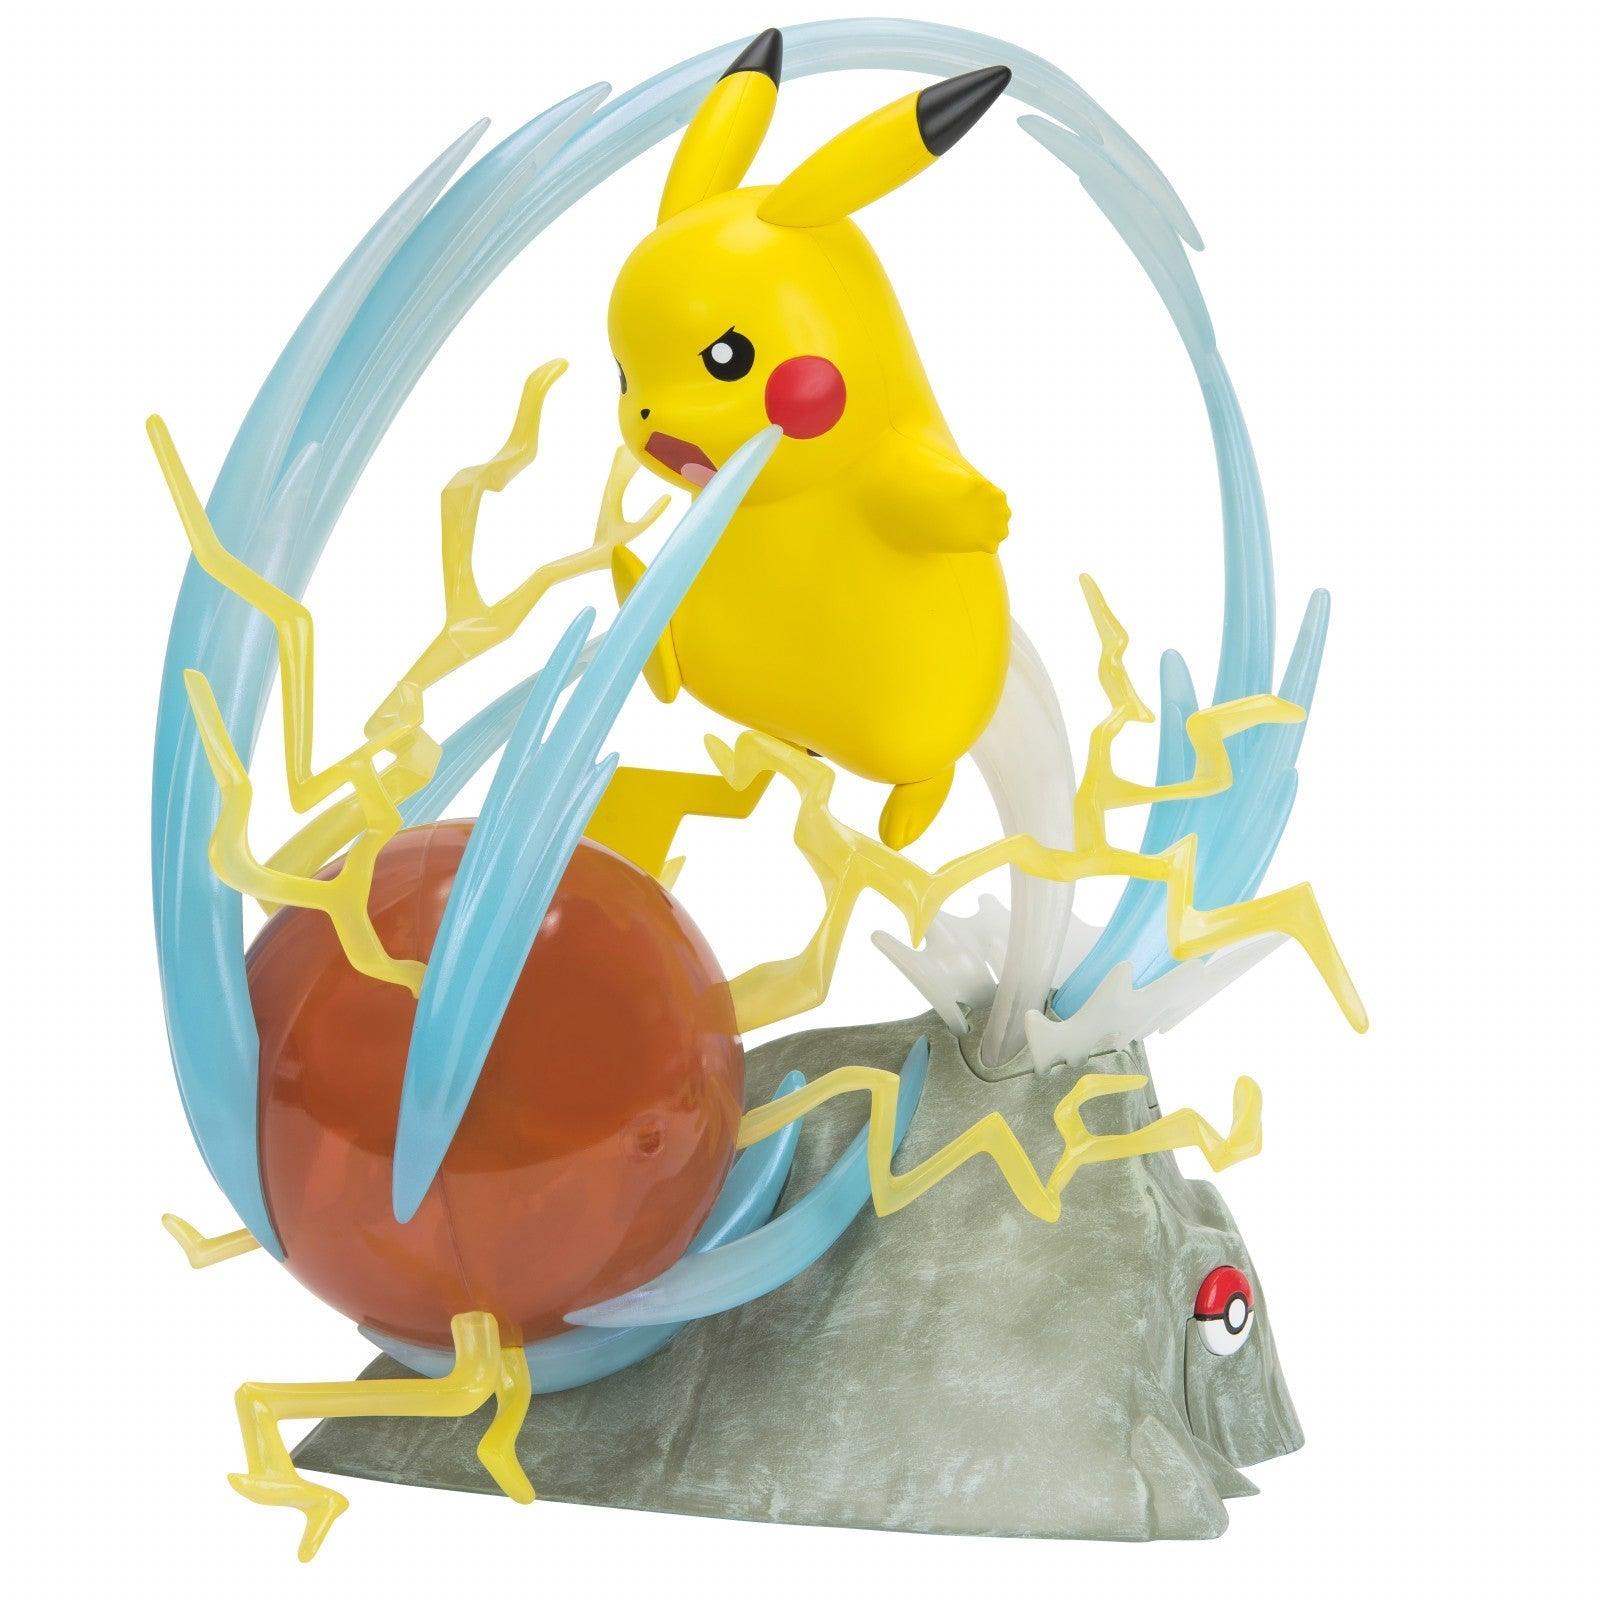 VR-90869 Pokemon Deluxe Collectors Figure Pikachu 1/10 Scale - Big Balloon - Titan Pop Culture